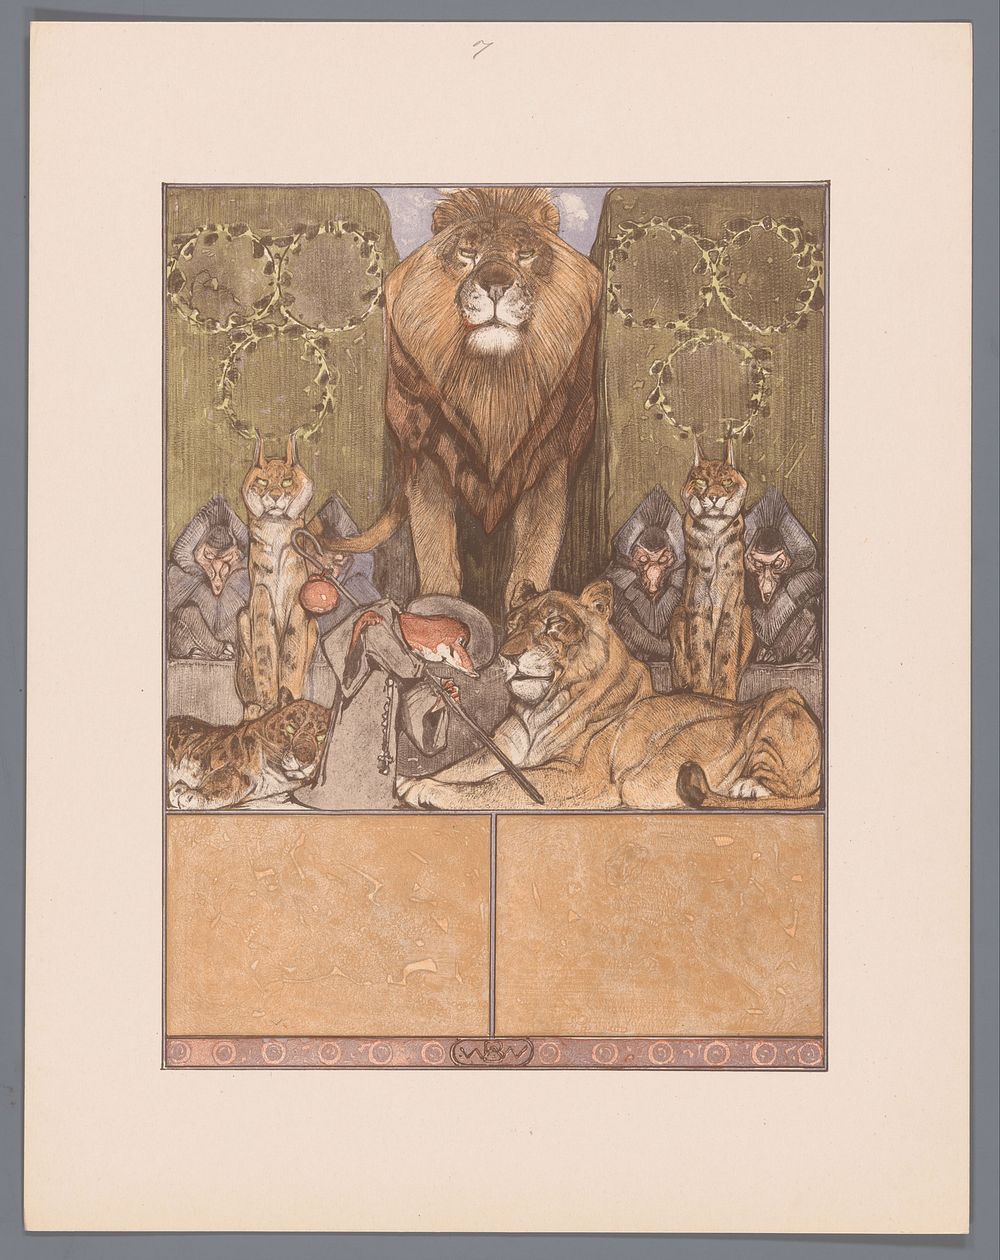 Vos in monnikspij (Reinaert) aan voeten van leeuw (Nobel) en leeuwin (Gentel), temidden van andere dieren (c. 1910) by…